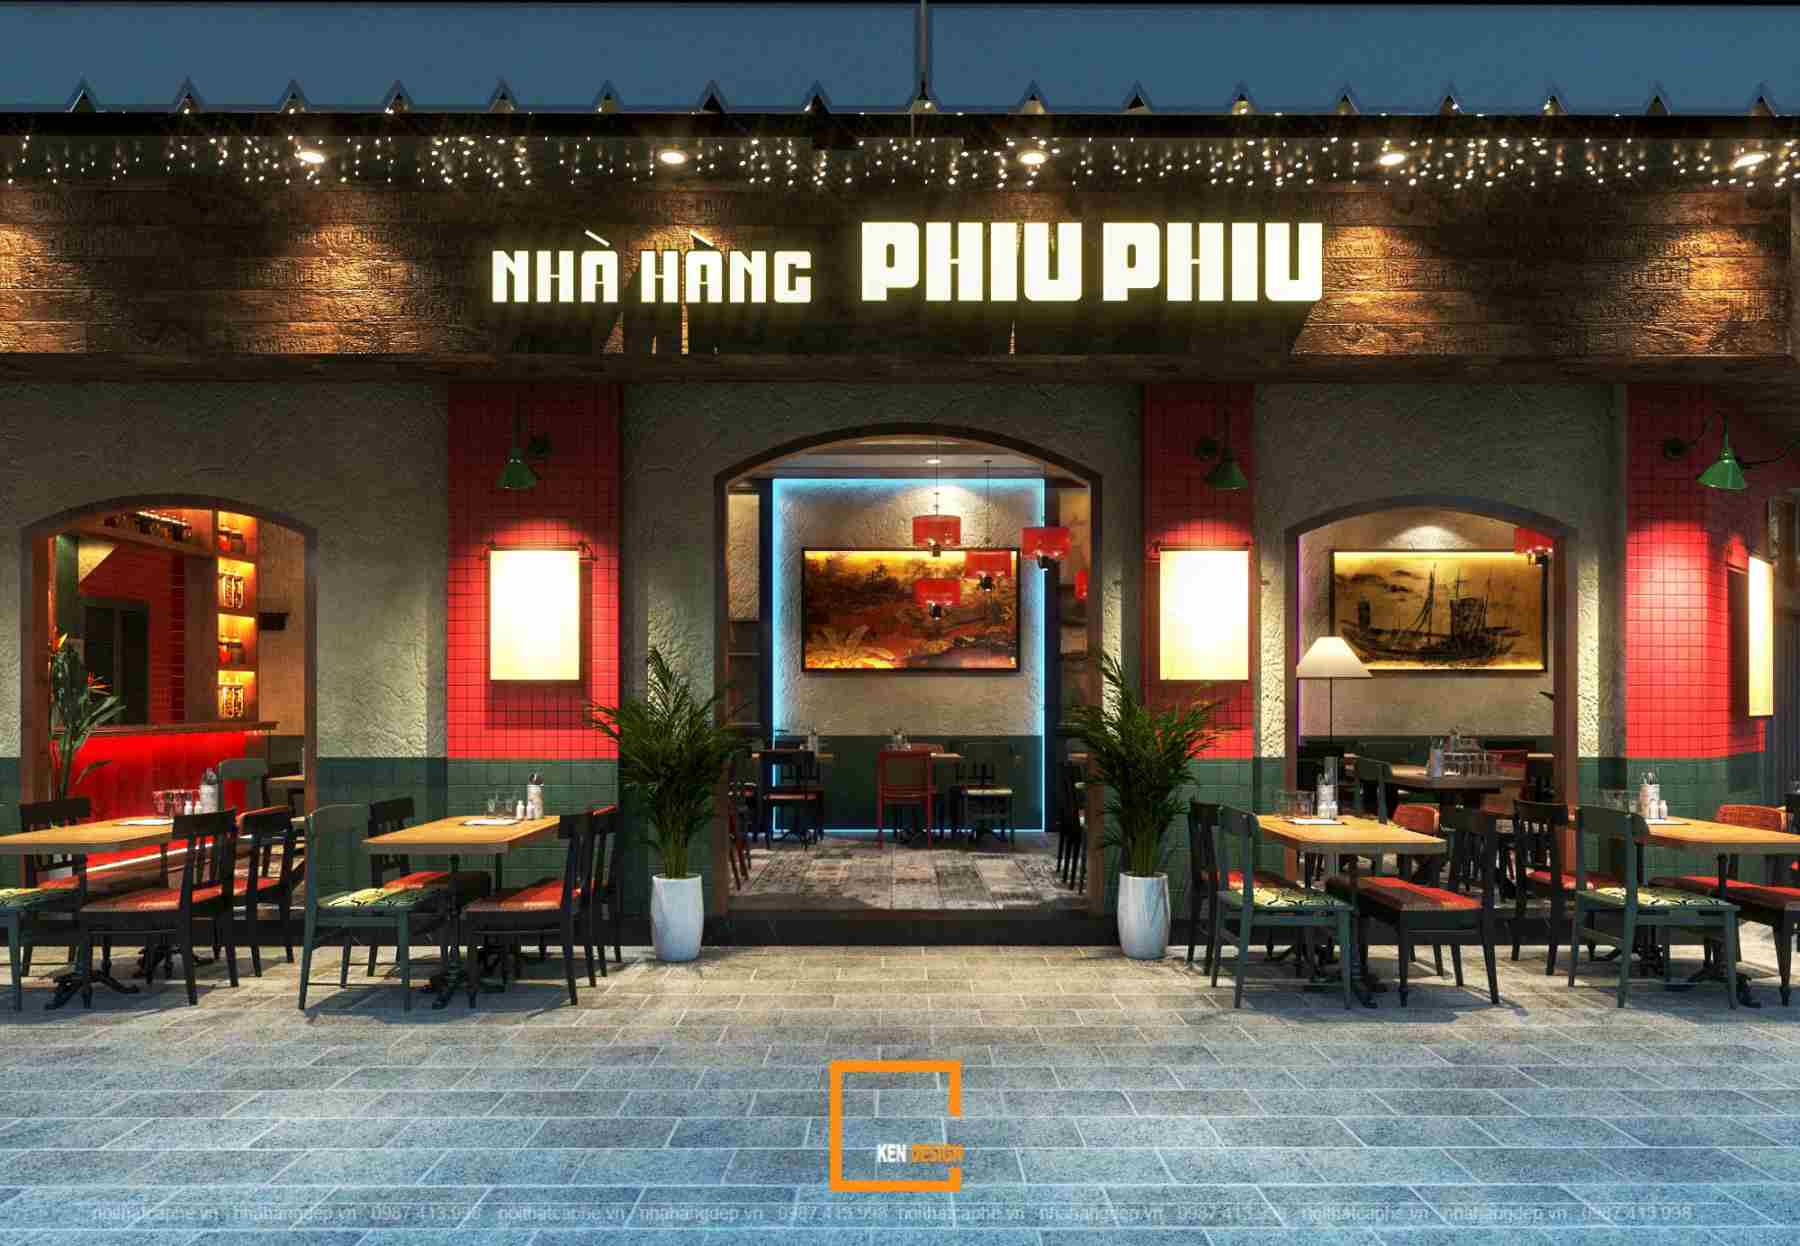 Thiết kế nhà hàng Phiu Phiu